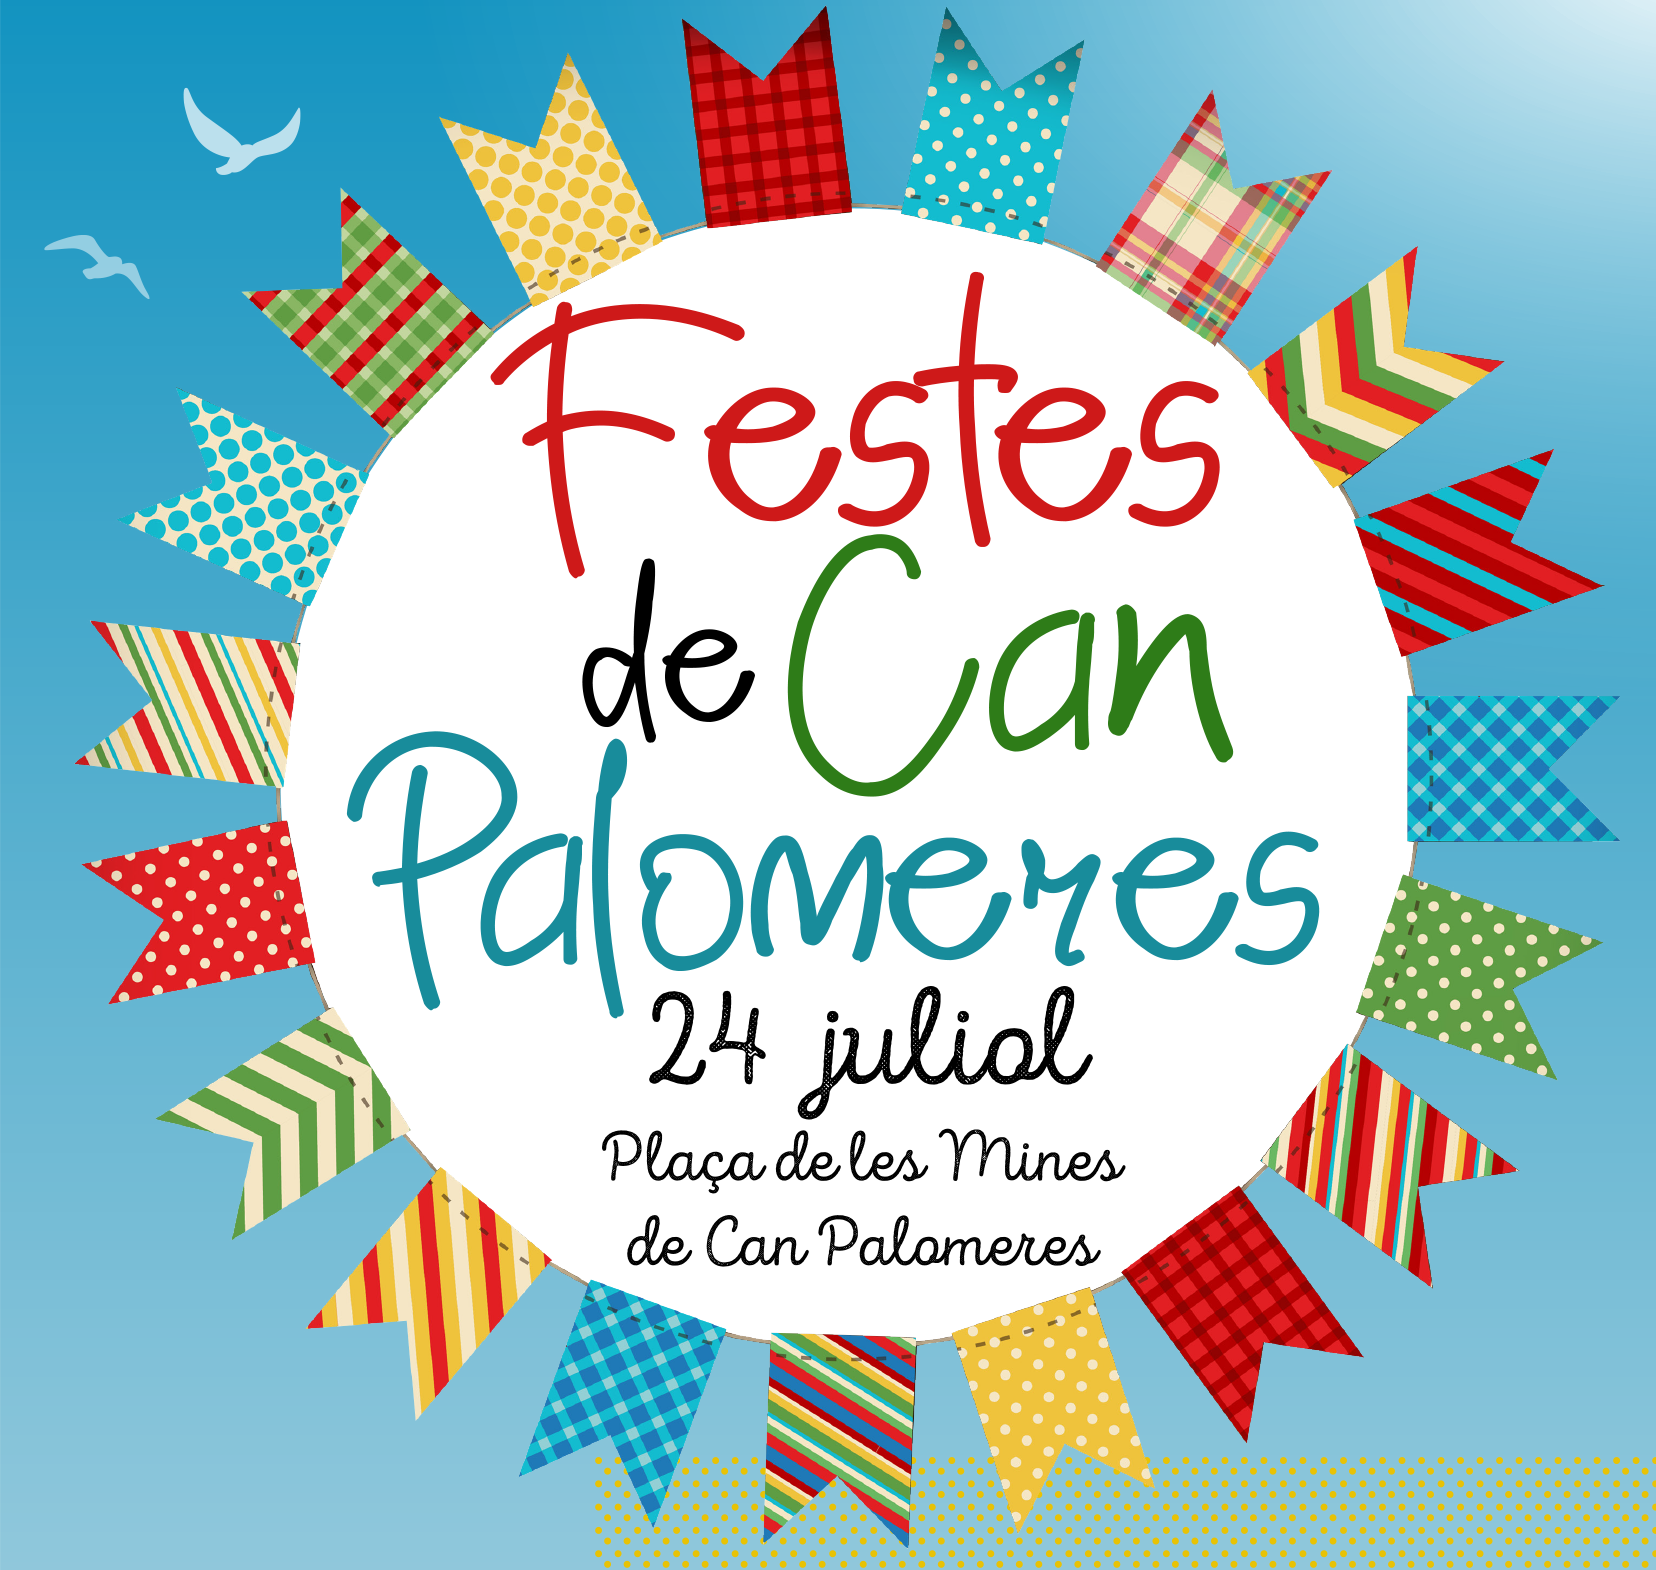 Festes de Can Palomeres: Concert de rumba i flamenc 